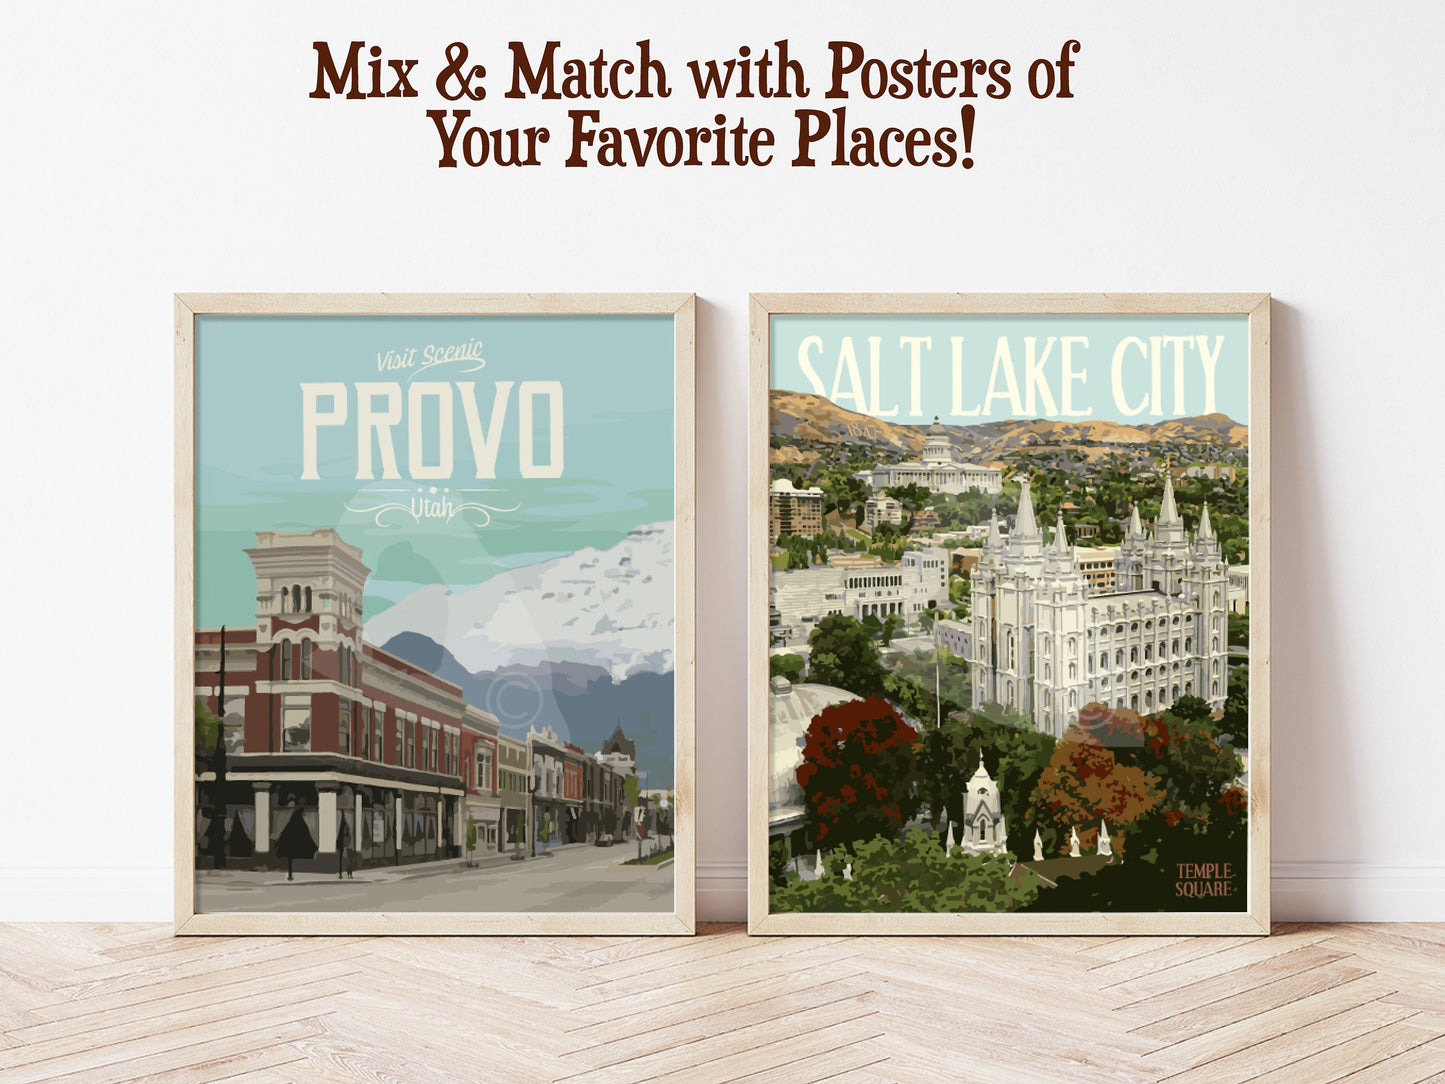 Salt Lake City Utah Print, Salt Lake City Downtown Poster, Salt Lake City Temple Poster, Vintage Style Travel Art